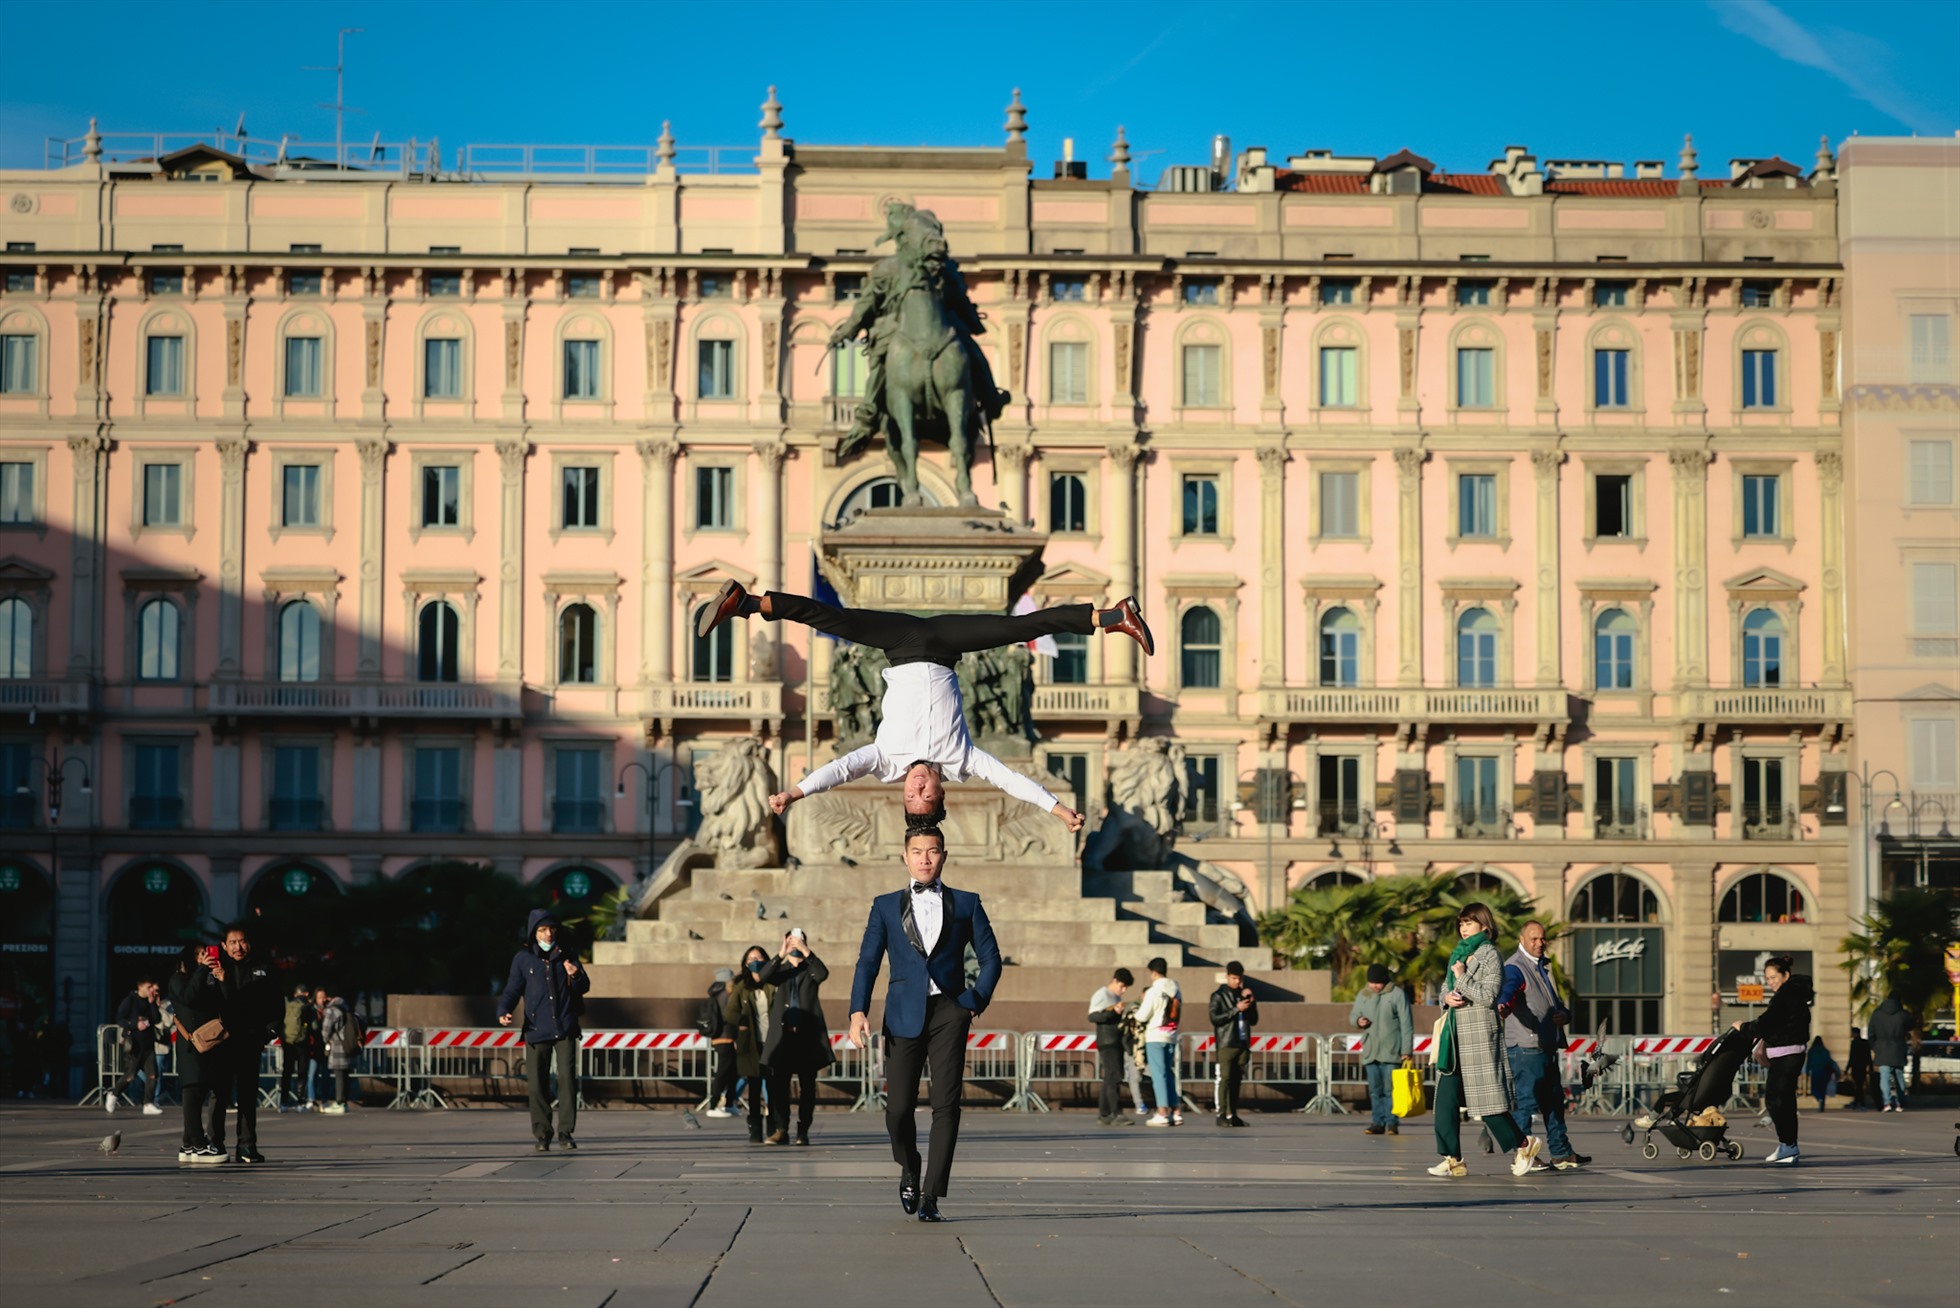 Quốc Cơ - Quốc Nghiệp tại Đài tưởng niệm 127 năm tuổi Vittorio Emanuele II ở trung tâm quảng trường Piazza Del Duomo, Milan, Ý. Ảnh: Hải An